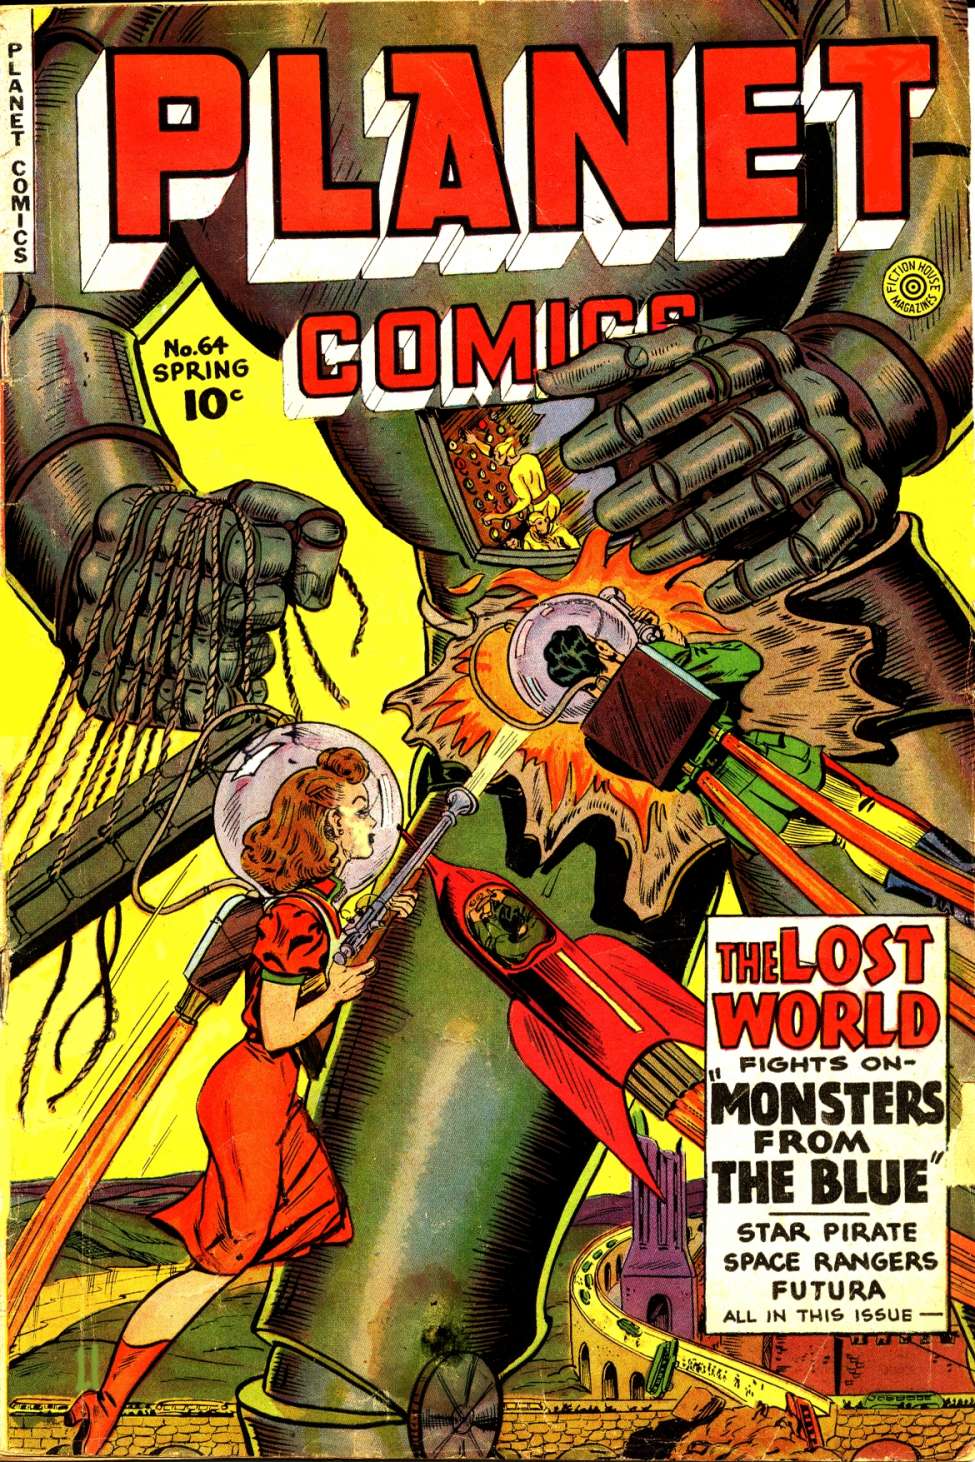 Planet Comics #64 - Version 1 (Fiction House)